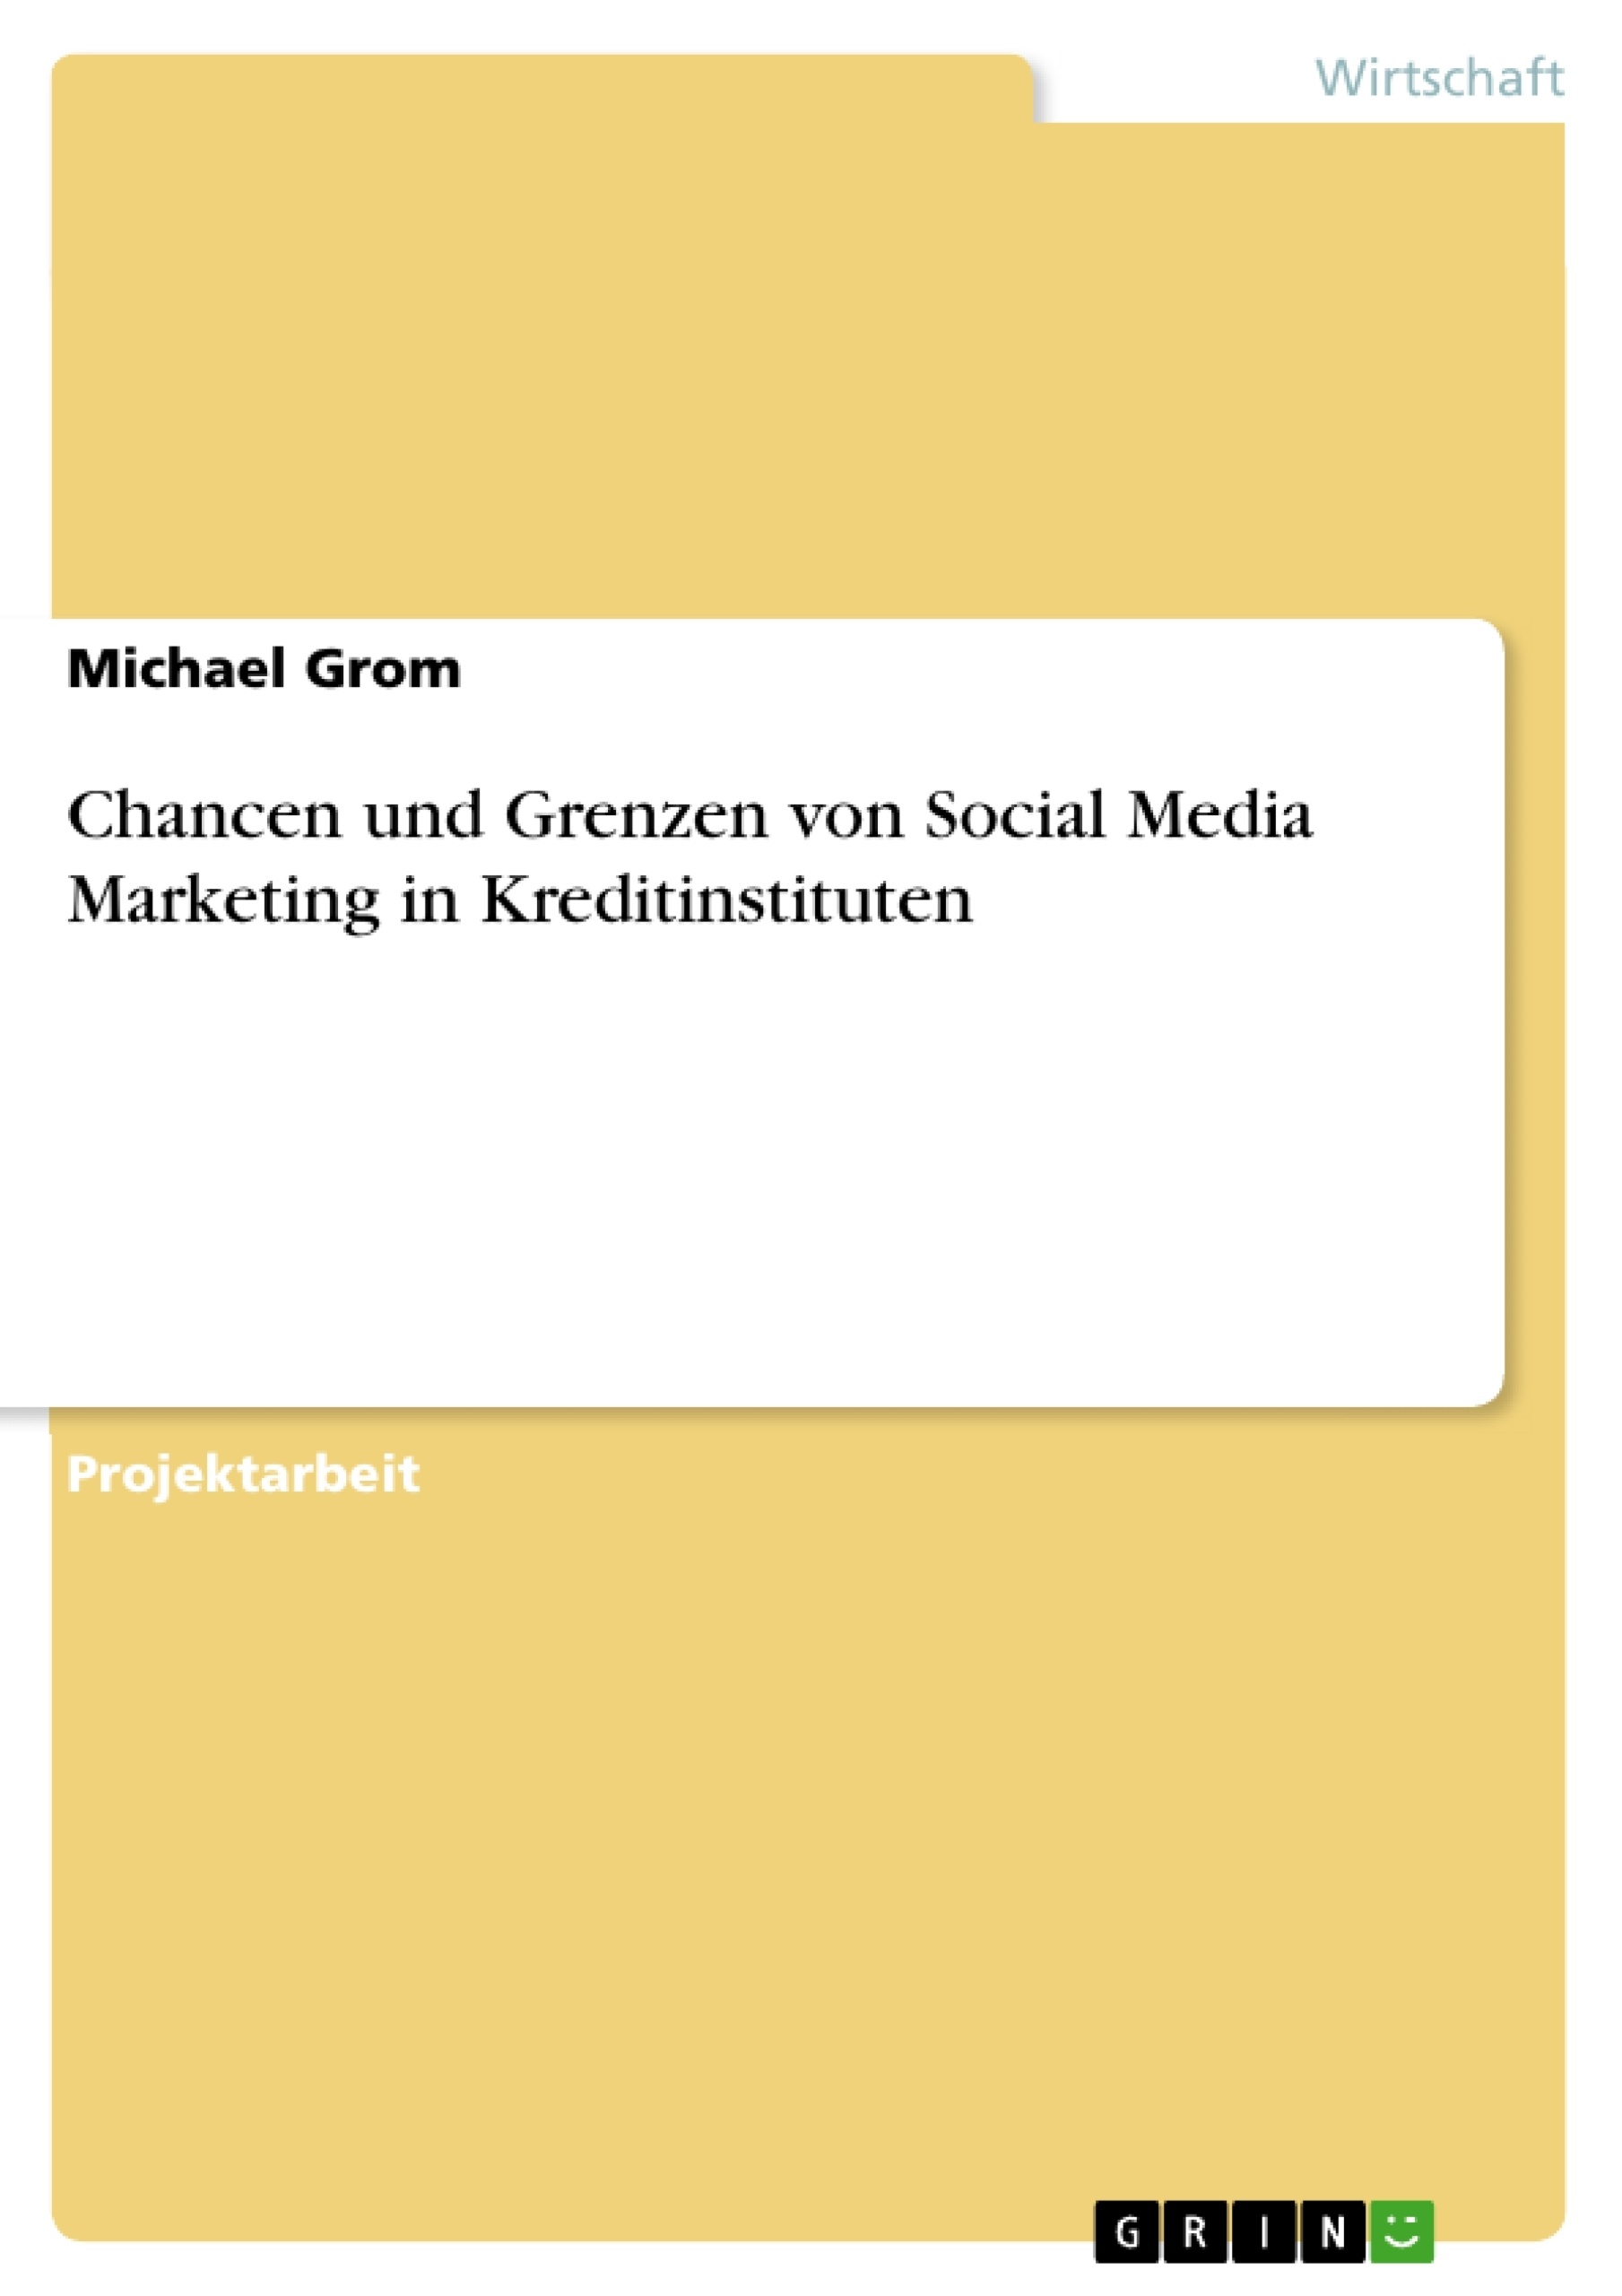 Título: Chancen und Grenzen von Social Media Marketing in Kreditinstituten